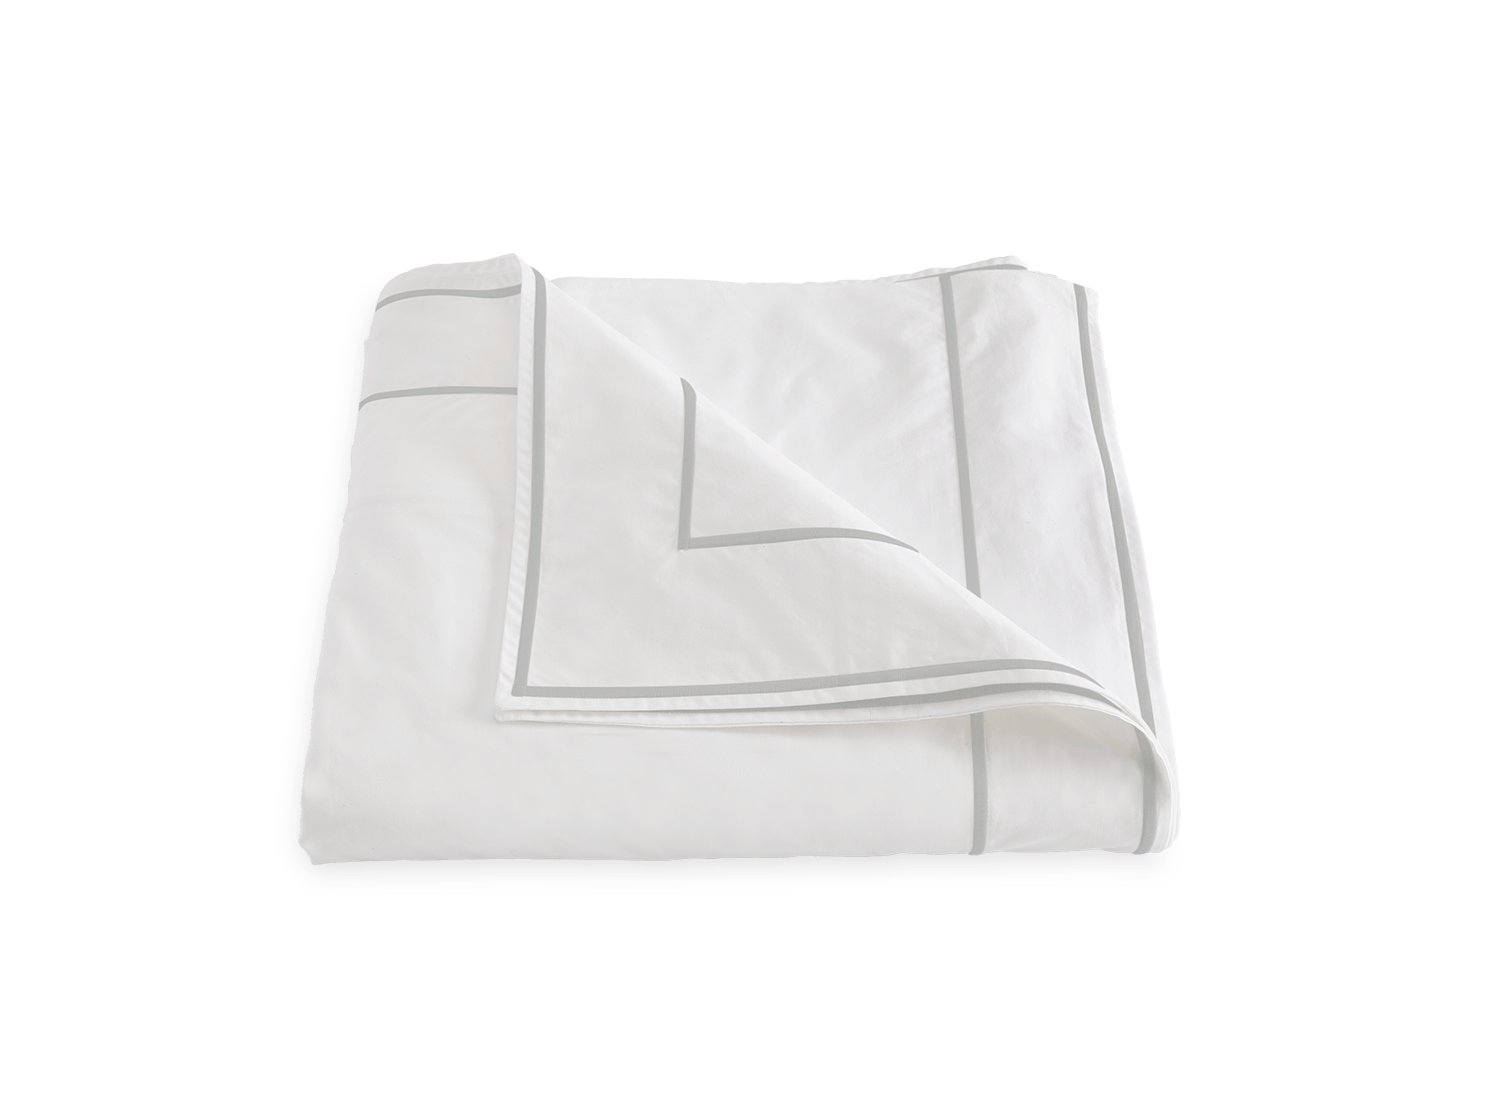 ansonia-duvet-cover-matouk-luxury-linens